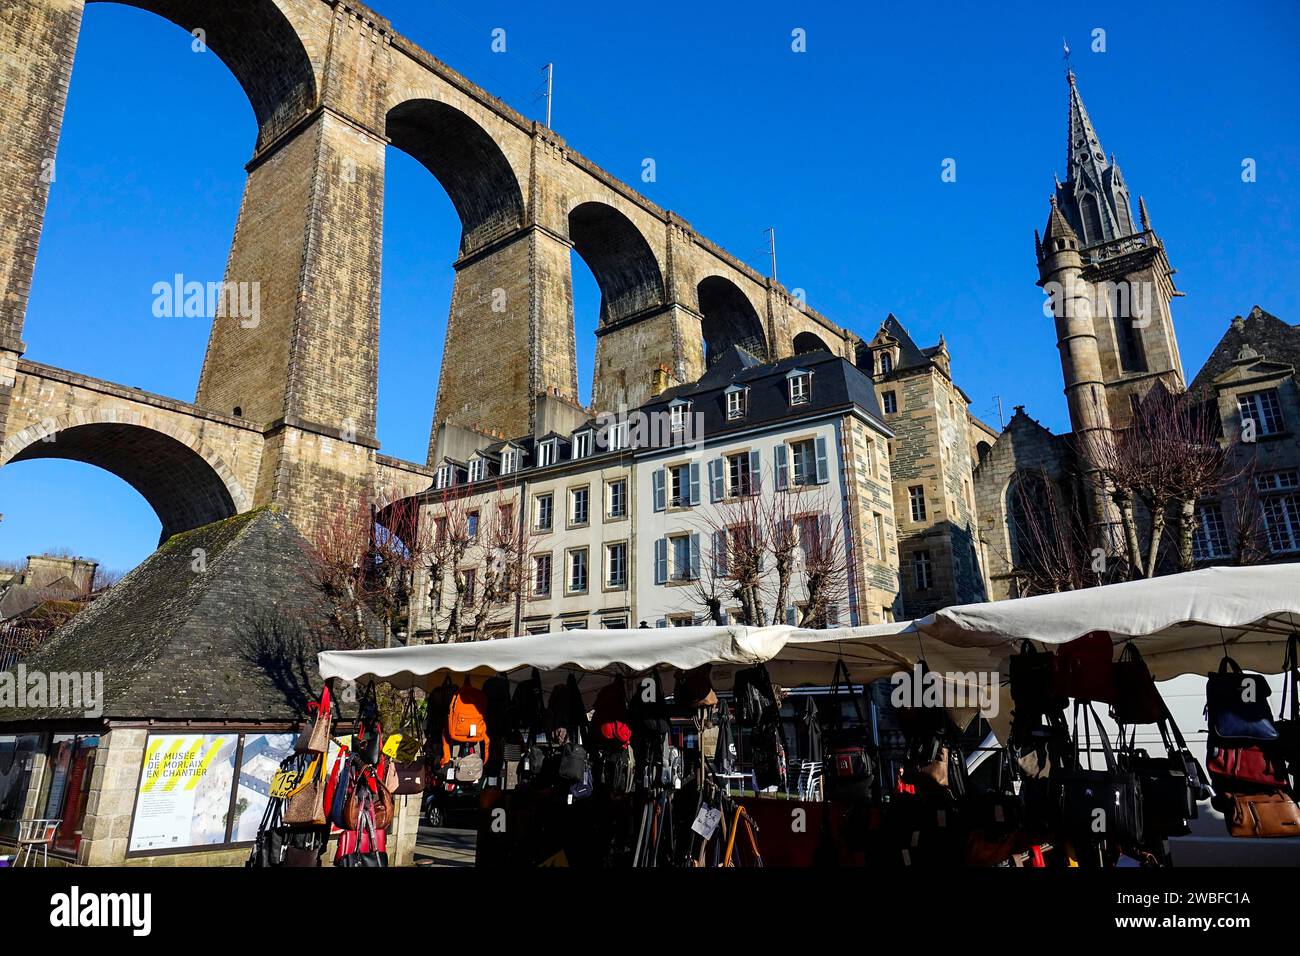 Place des Otages, viaducto de la línea ferroviaria París-Brest, iglesia de Saint Melaine, Morlaix Montroulez, Finistere Penn Ar Bed departamento, Bretagne Foto de stock